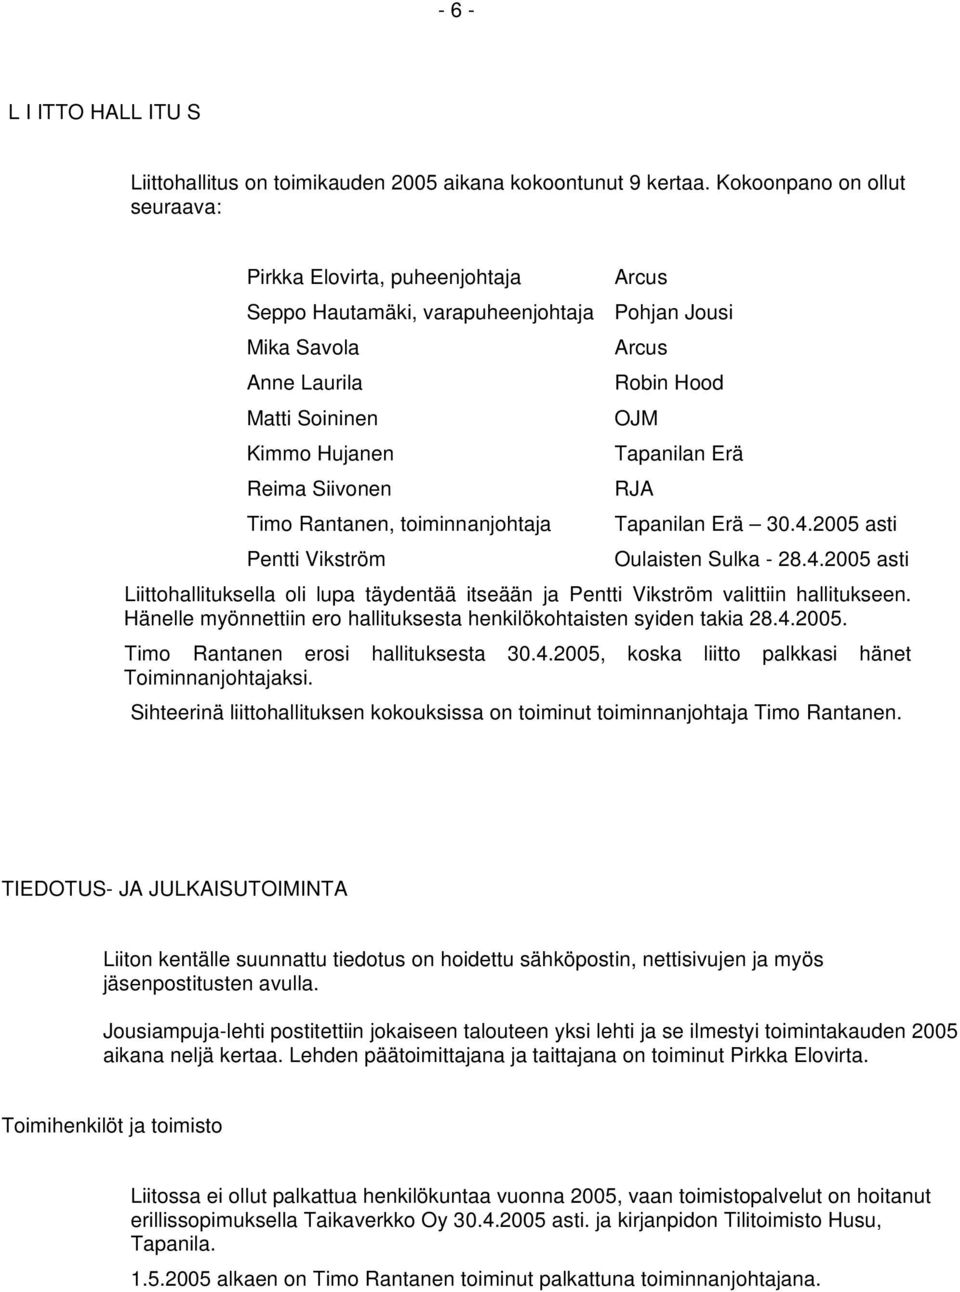 Erä Reima Siivonen RJA Timo Rantanen, toiminnanjohtaja Tapanilan Erä 30.4.2005 asti Pentti Vikström Oulaisten Sulka - 28.4.2005 asti Liittohallituksella oli lupa täydentää itseään ja Pentti Vikström valittiin hallitukseen.